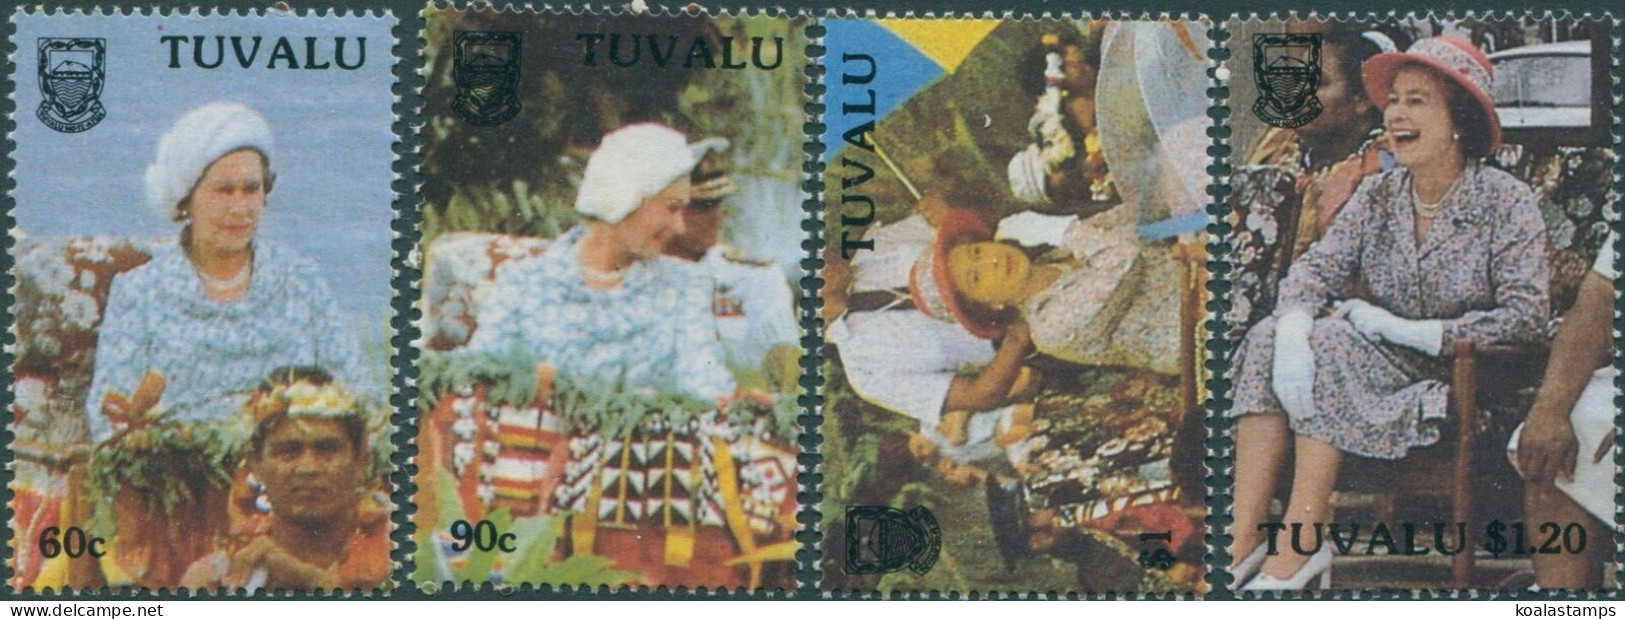 Tuvalu 1988 SG540-543 Independence Royal Visit Set MNH - Tuvalu (fr. Elliceinseln)